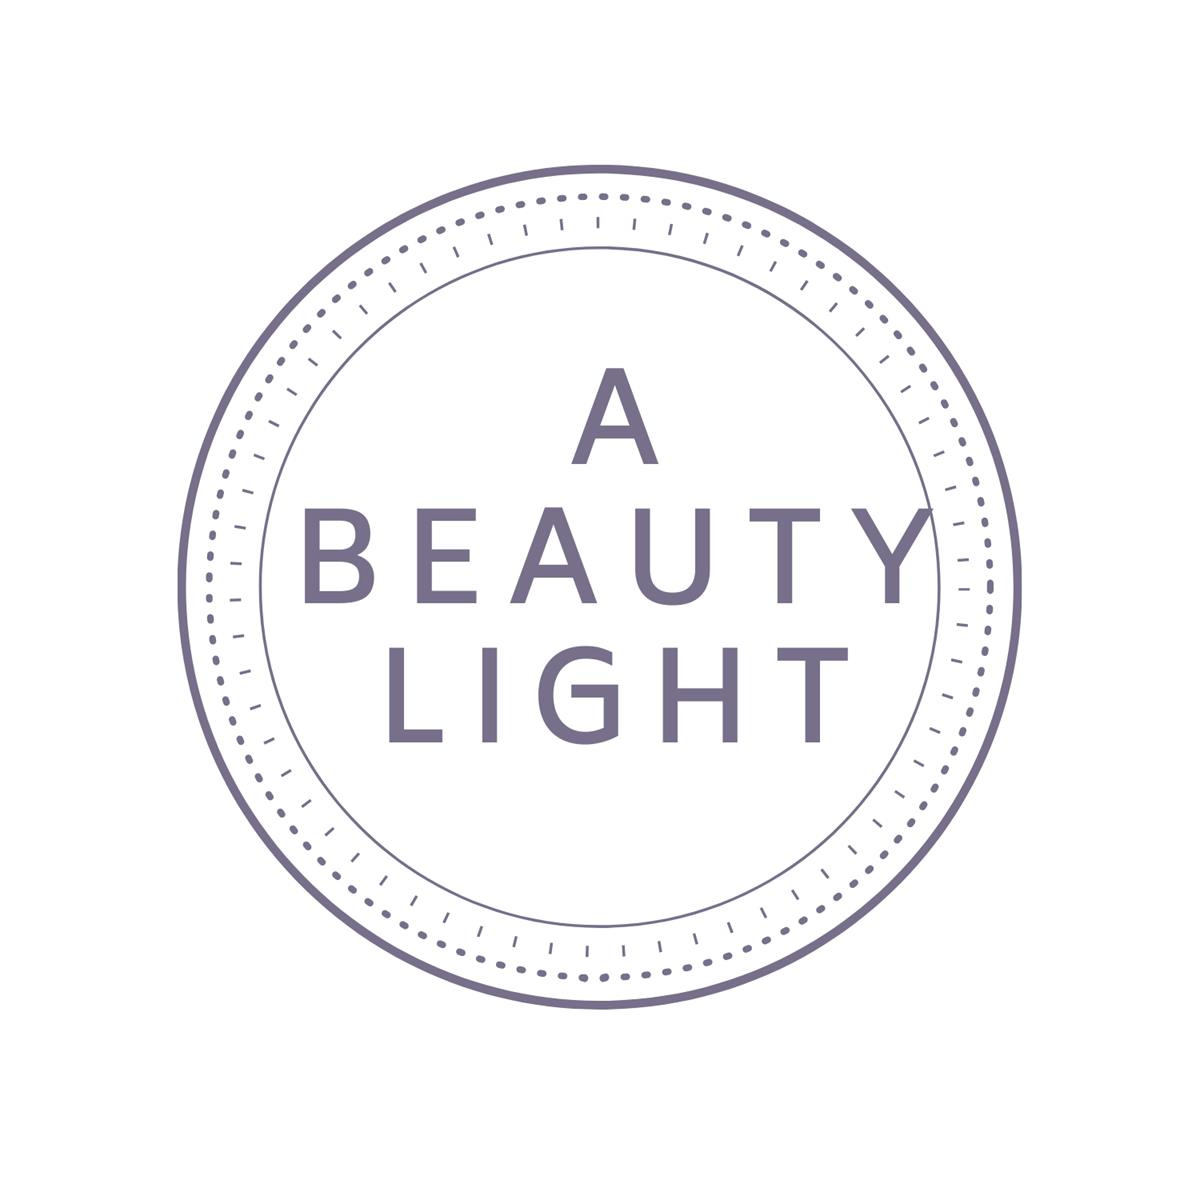 A Beauty Light